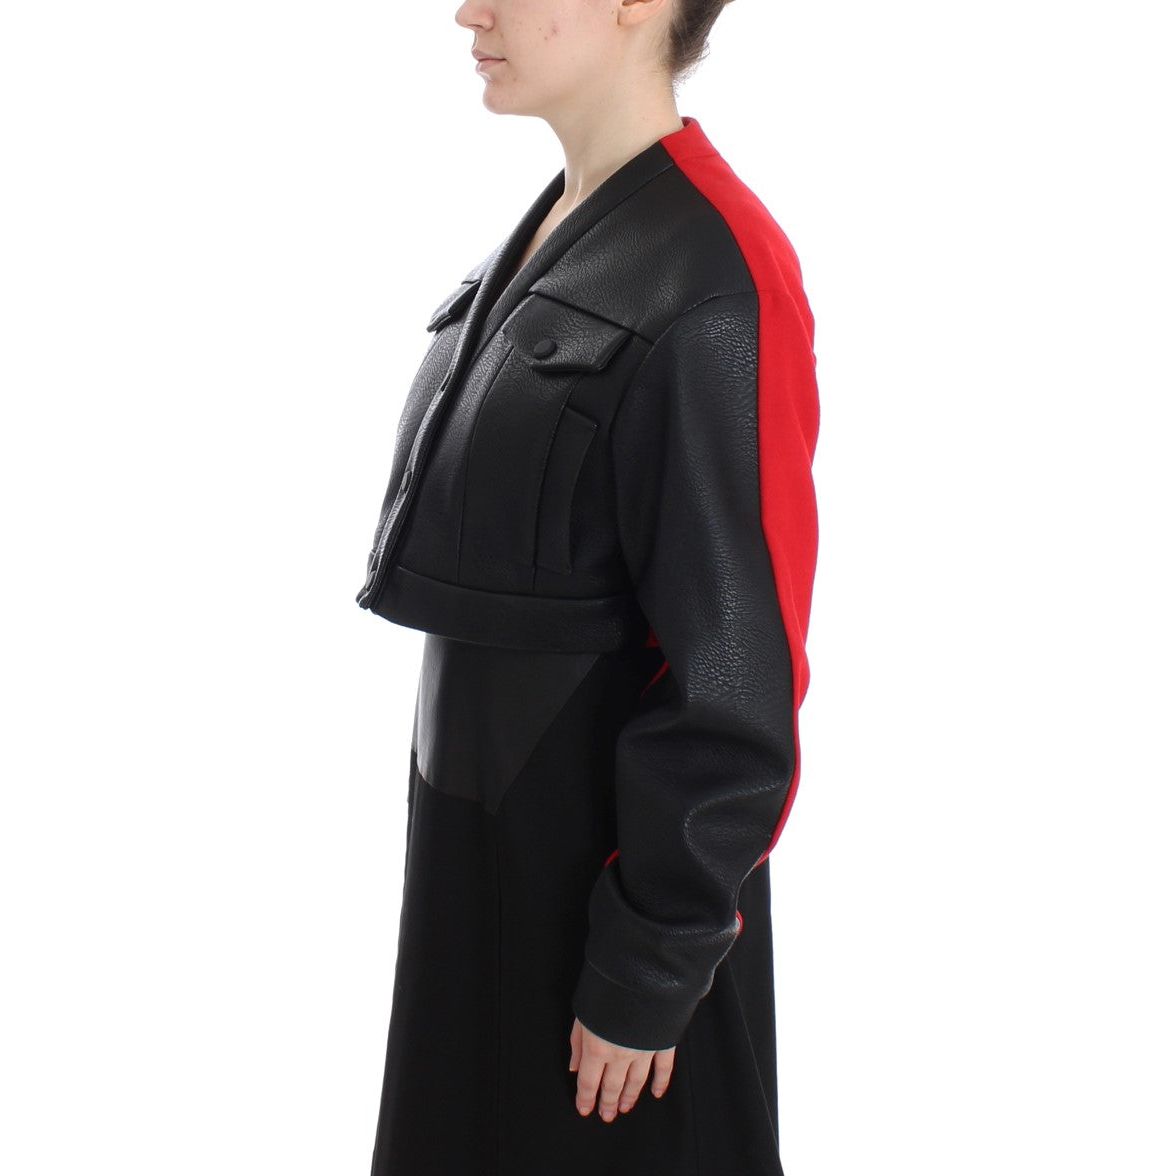 KAALE SUKTAE Elegant Cropped Artisan Jacket black-short-croped-coat-bomber-jacket Coats & Jackets 187712-black-short-croped-coat-bomber-jacket-1.jpg